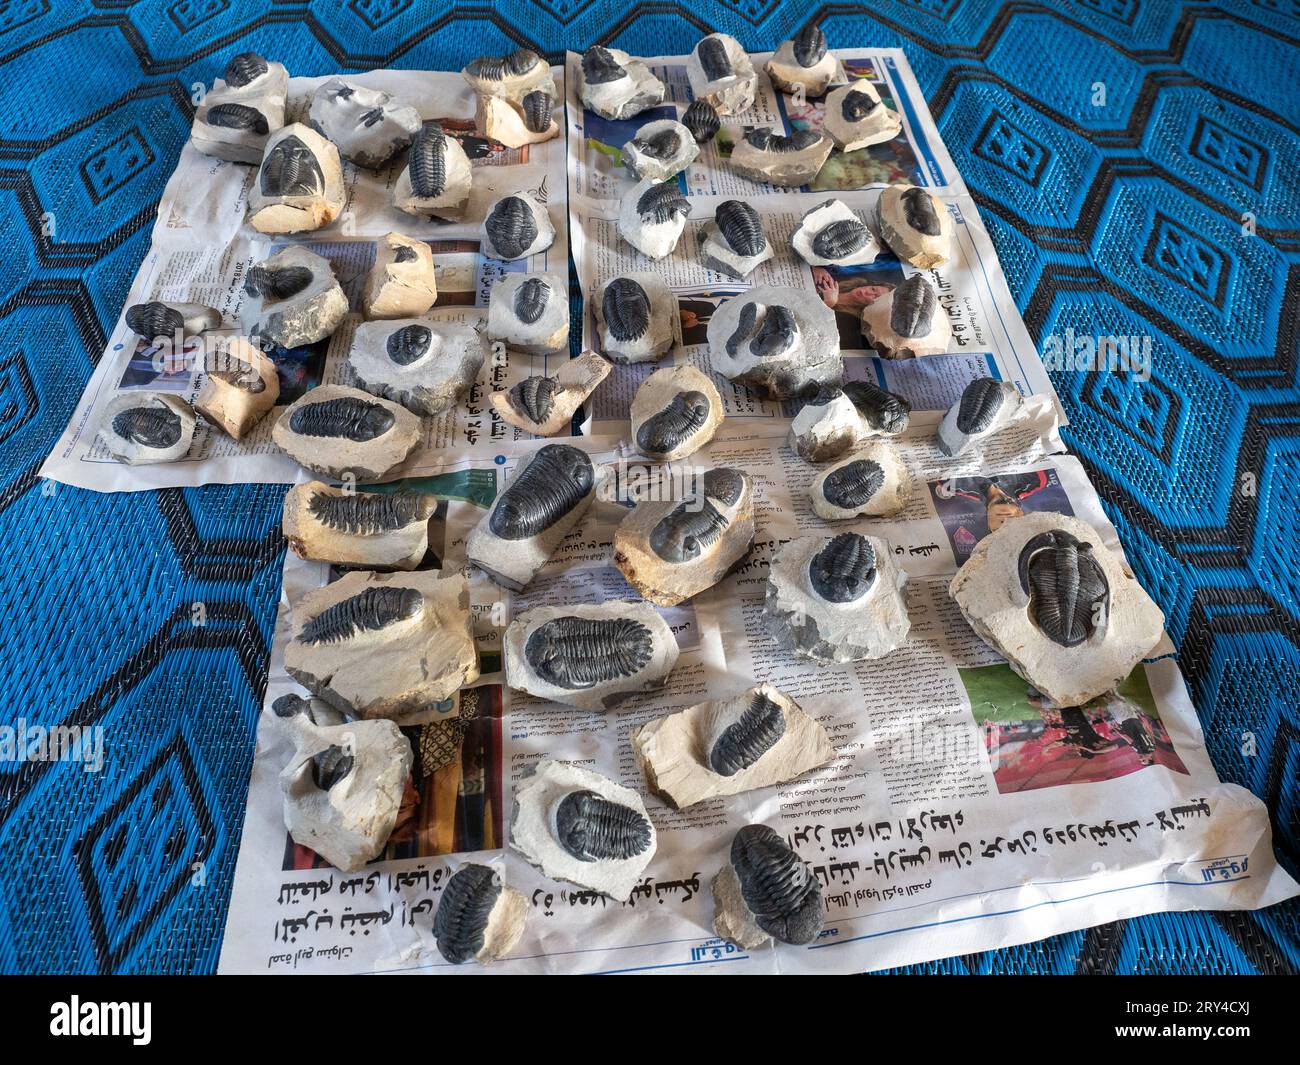 Molti bellissimi fossili di trilobiti nella galleria/negozio di Ben Moula nell'Anti-Atlante in Marocco Foto Stock